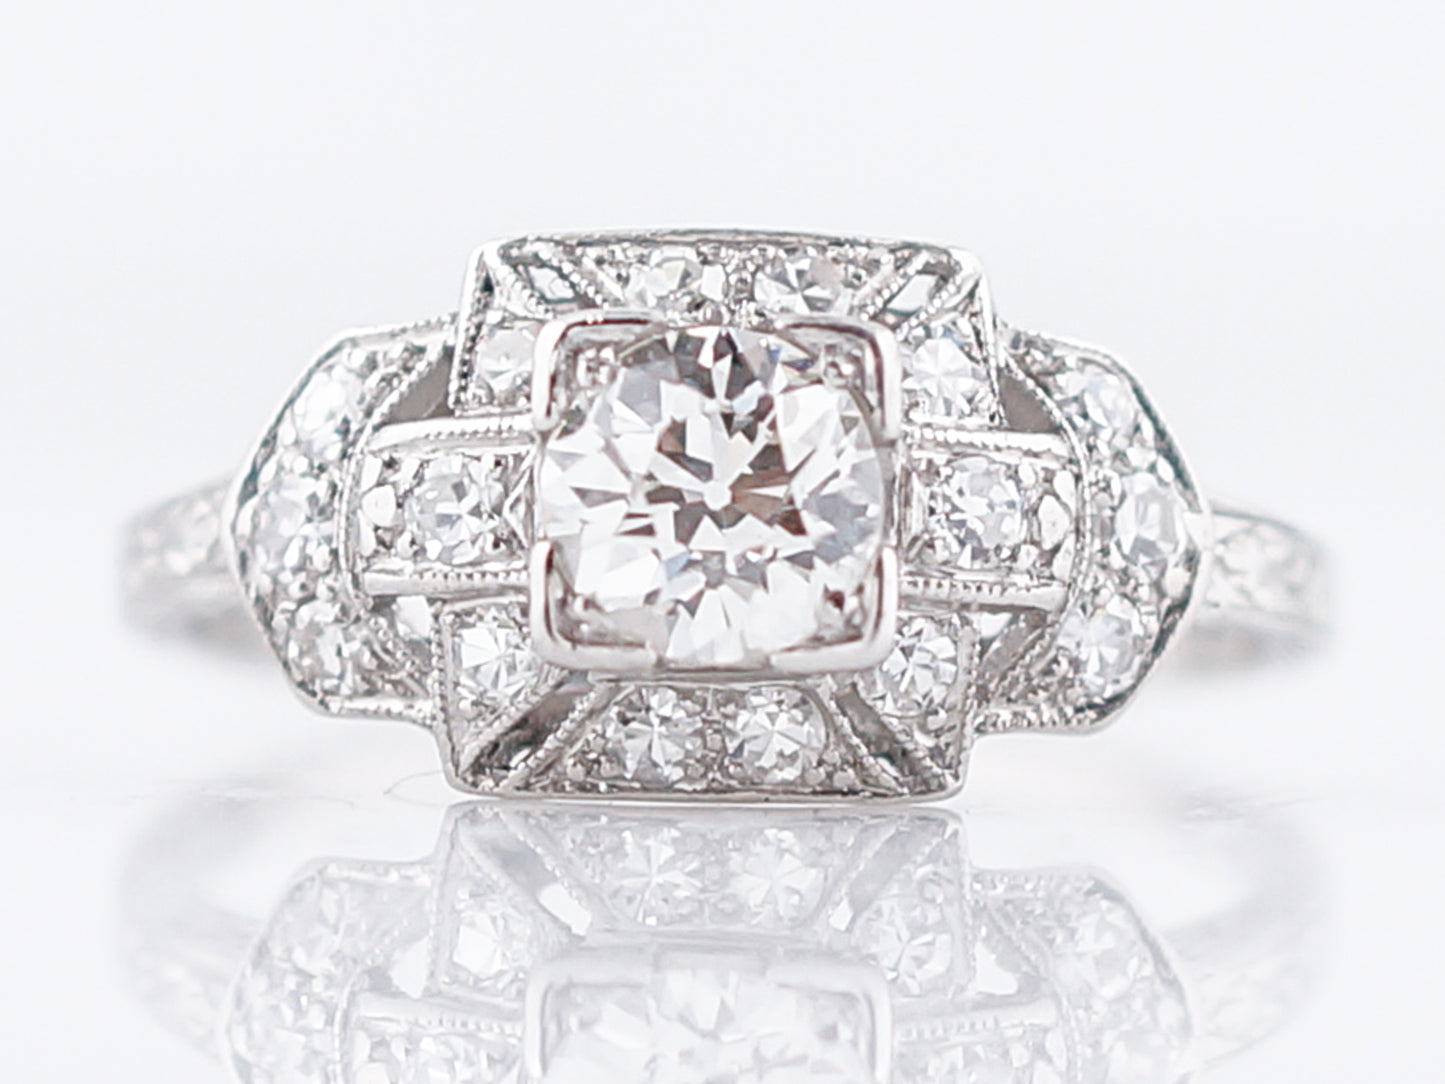 Antique Engagement Ring Art Deco .52 Old Mine Cut Diamond in Platinum